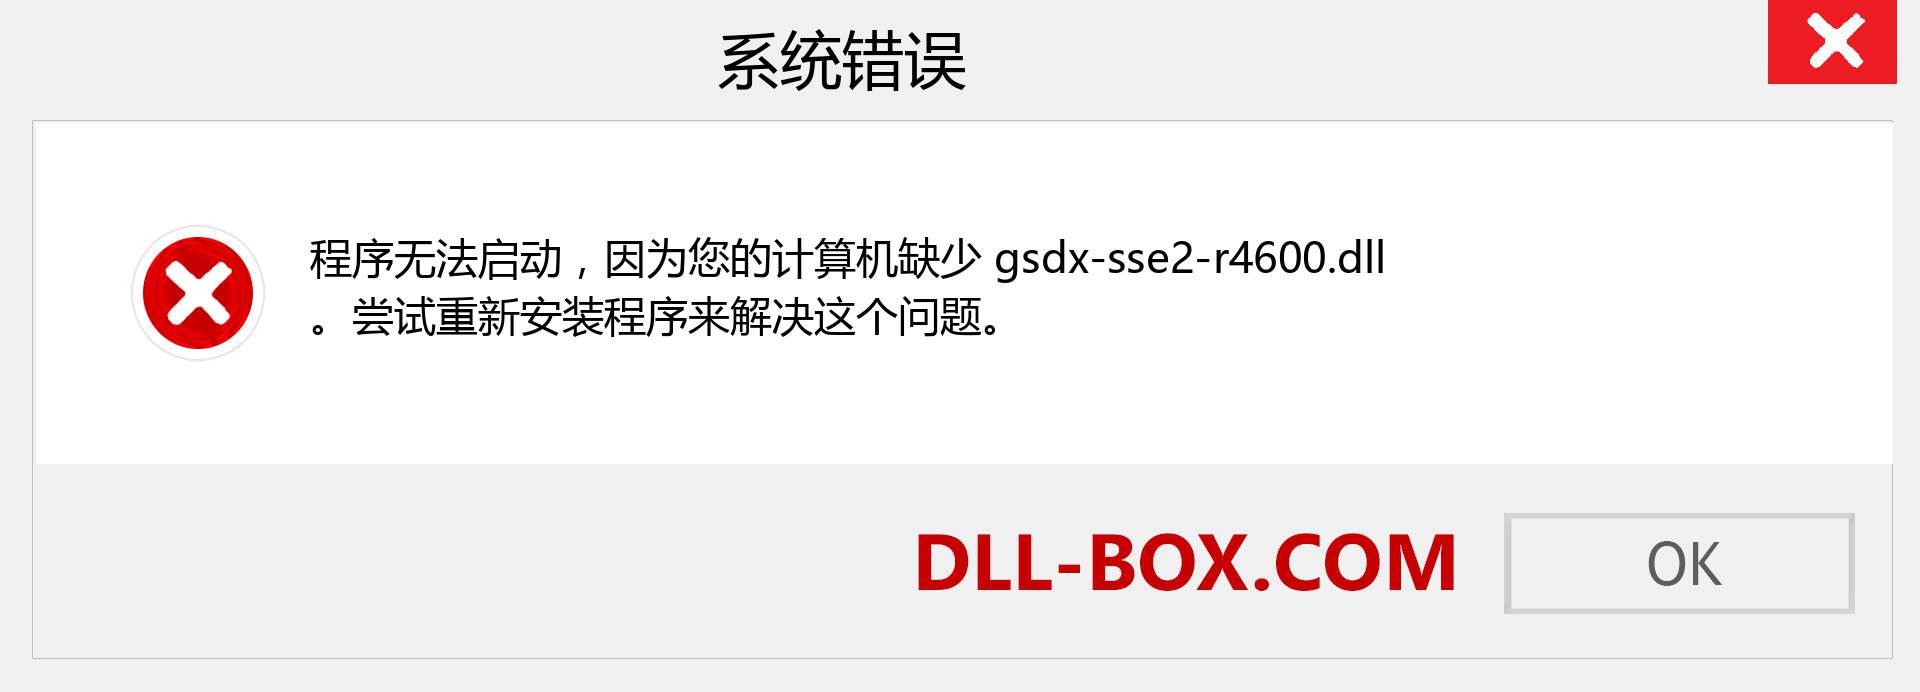 gsdx-sse2-r4600.dll 文件丢失？。 适用于 Windows 7、8、10 的下载 - 修复 Windows、照片、图像上的 gsdx-sse2-r4600 dll 丢失错误